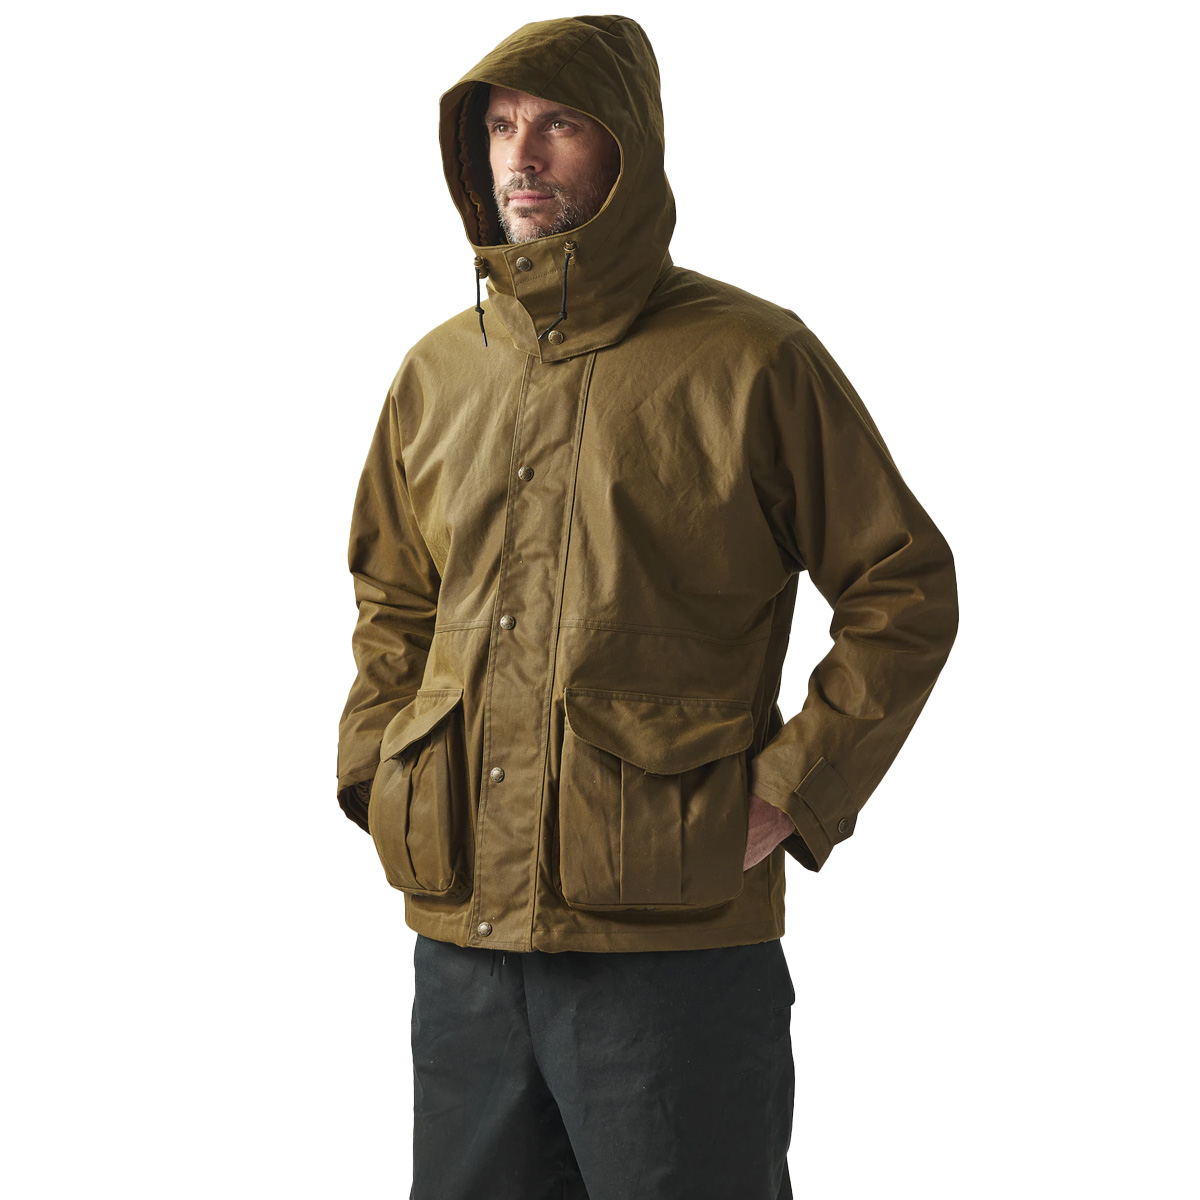 Filson Foul Weather Jacket Dark Tan, model is 188 cm, 86 kg wearing a size medium